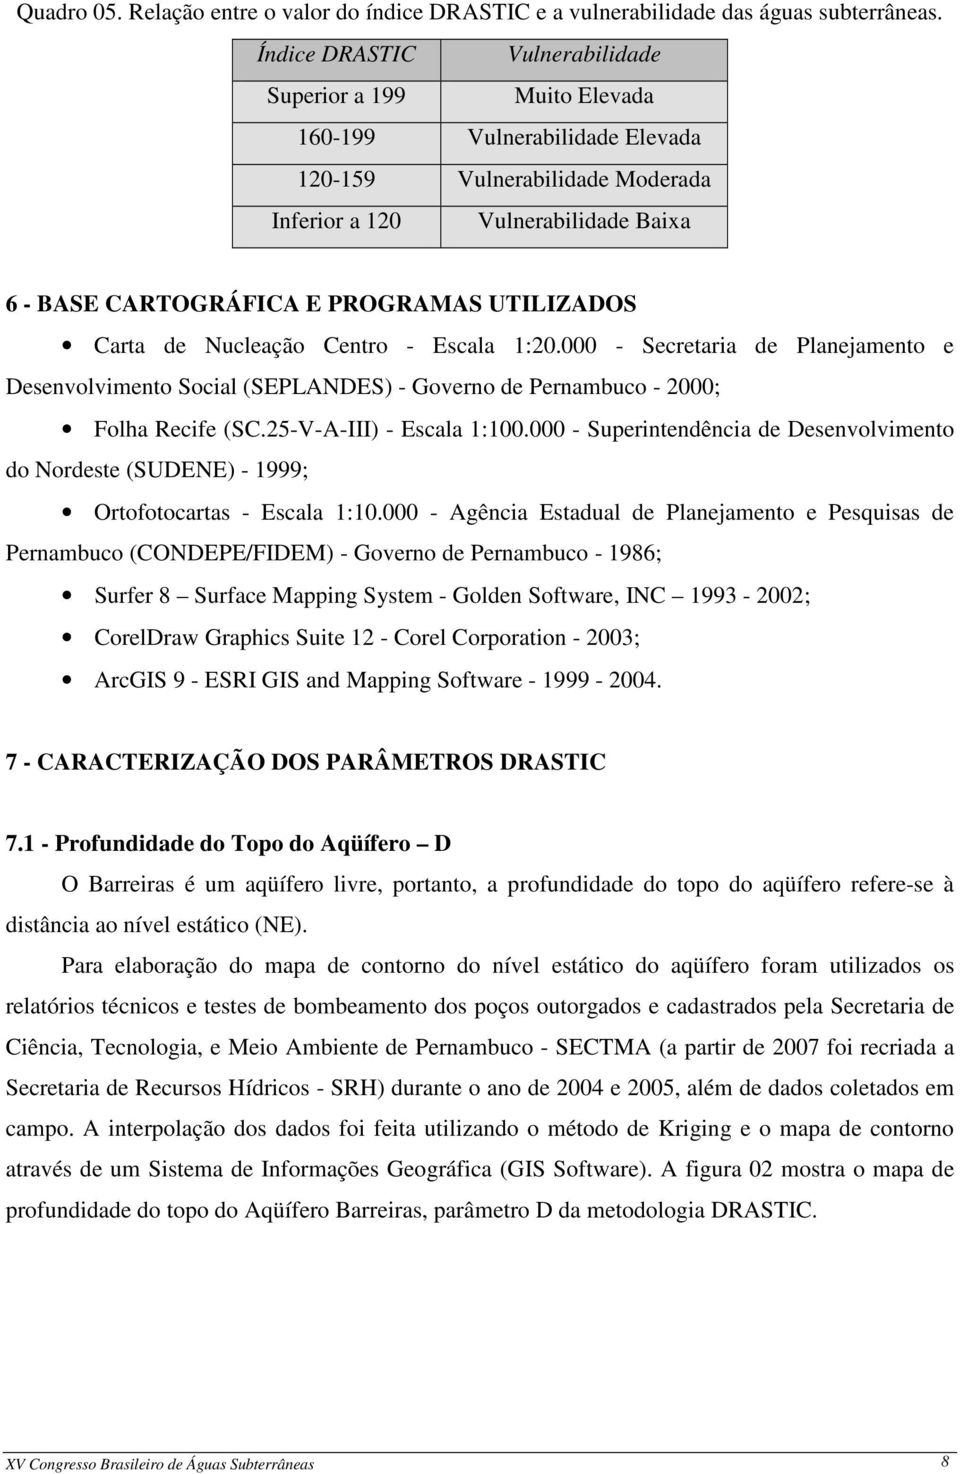 UTILIZADOS Carta de Nucleação Centro - Escala 1:20.000 - Secretaria de Planejamento e Desenvolvimento Social (SEPLANDES) - Governo de Pernambuco - 2000; Folha Recife (SC.25-V-A-III) - Escala 1:100.